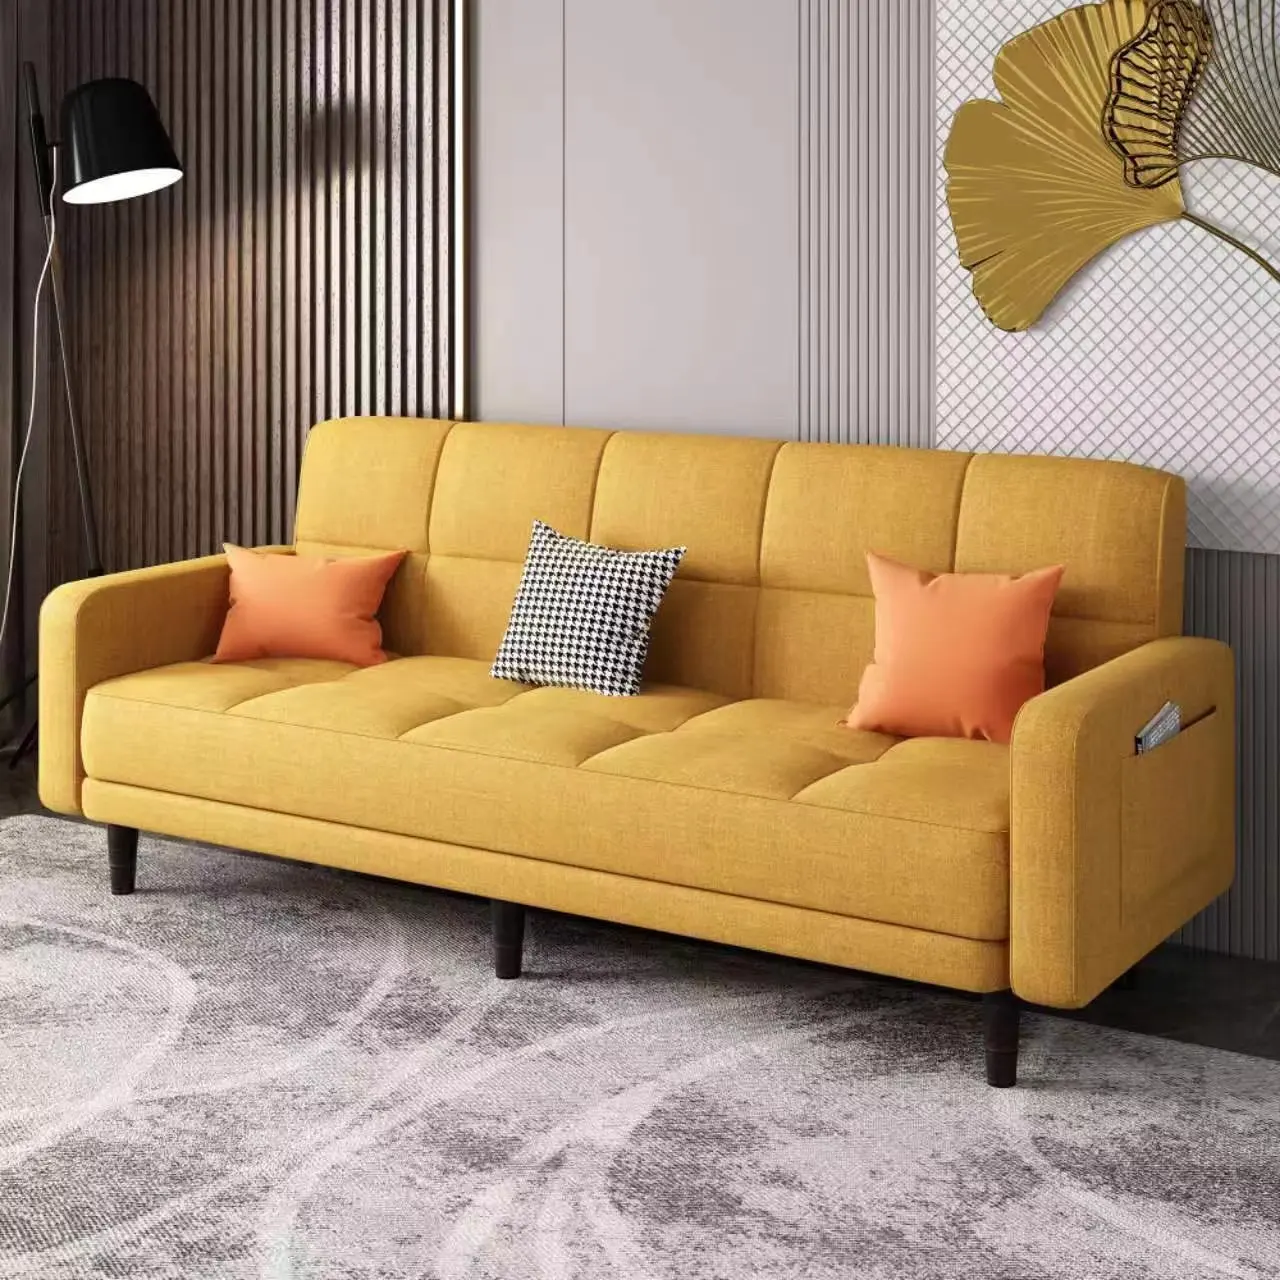 Lounge Fancy set da soggiorno componibile divano posto in tessuto moderno a basso prezzo lungo divano mobili per la casa